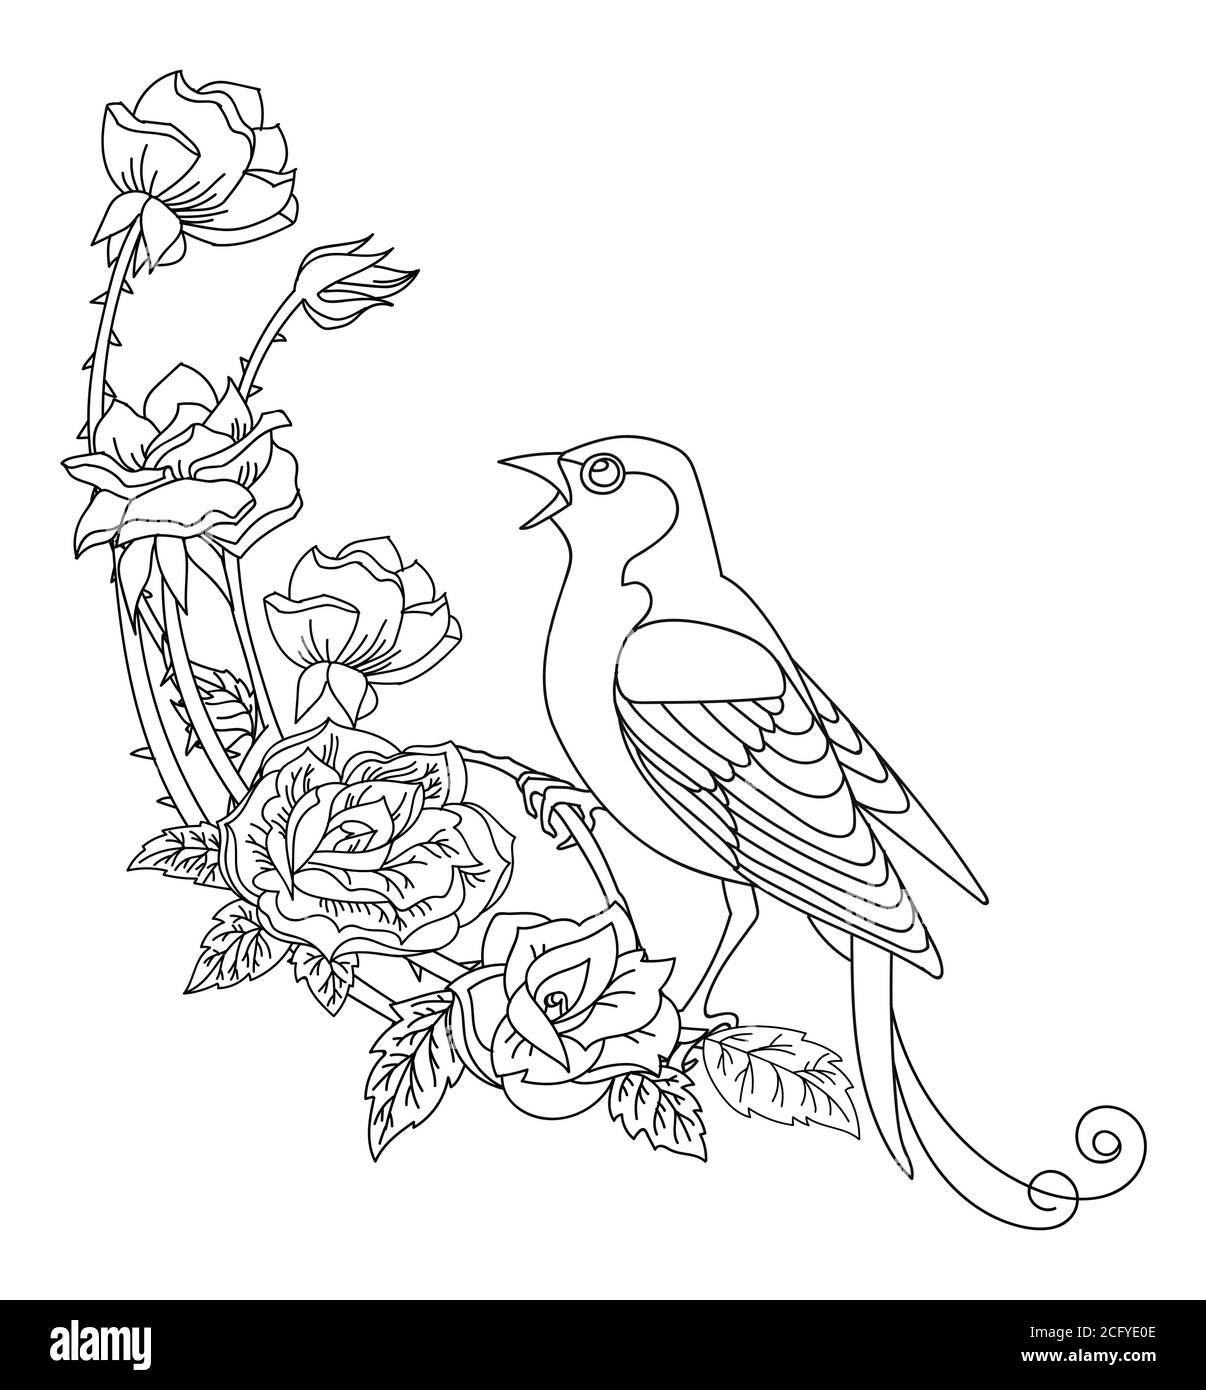 Contorno nero uccello e fiori. Immagine decorativa vettoriale a linea d'arte isolata su bianco. Modello monocromatico disegnato a mano vettoriale per colorare il libro, noi Illustrazione Vettoriale